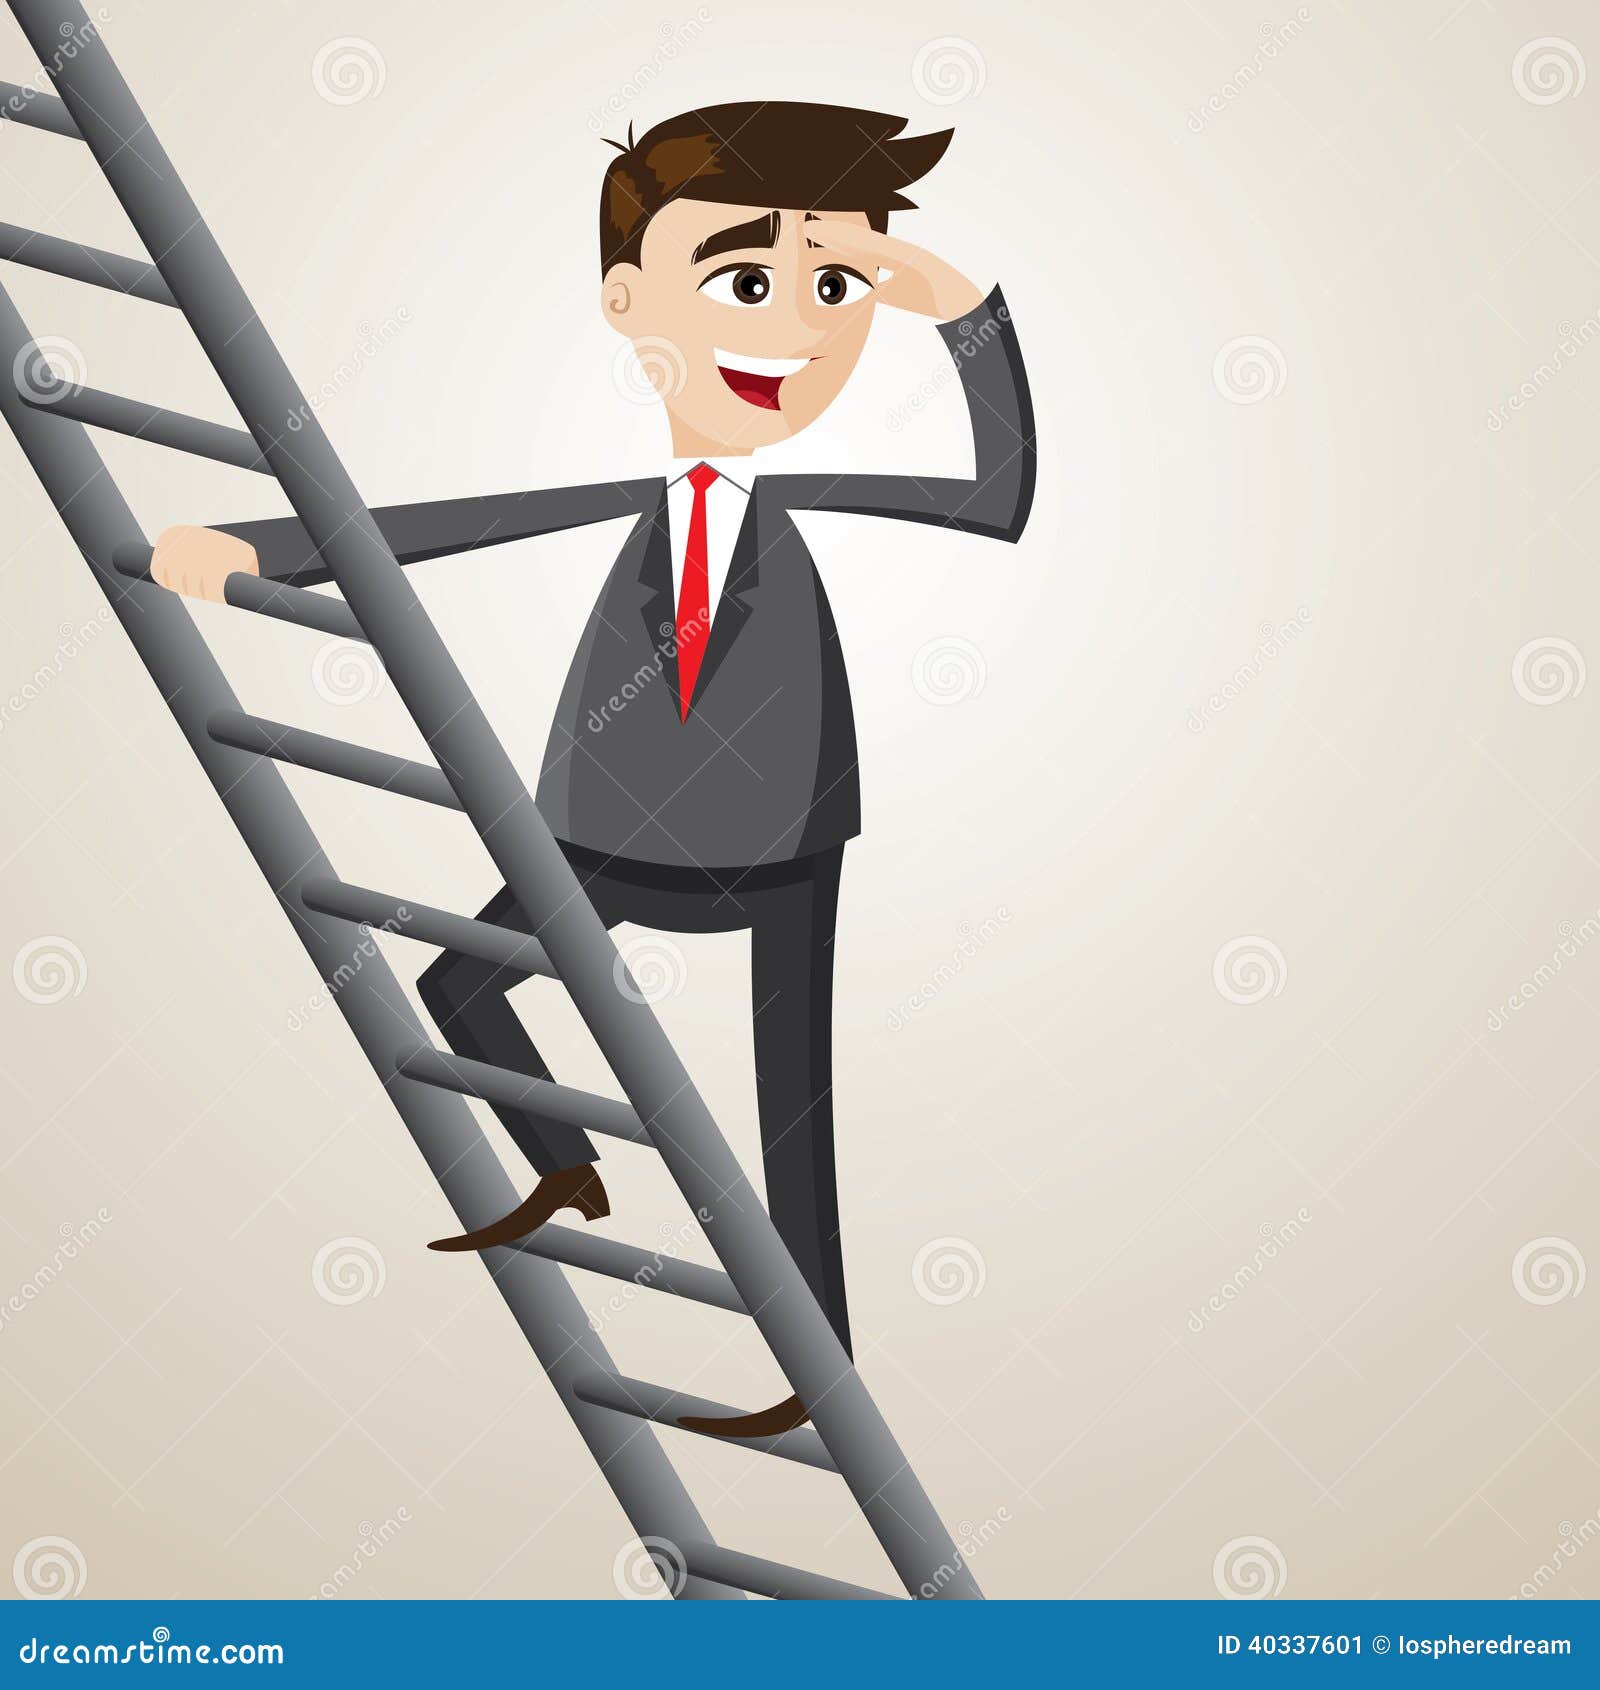 clipart man climbing ladder - photo #20